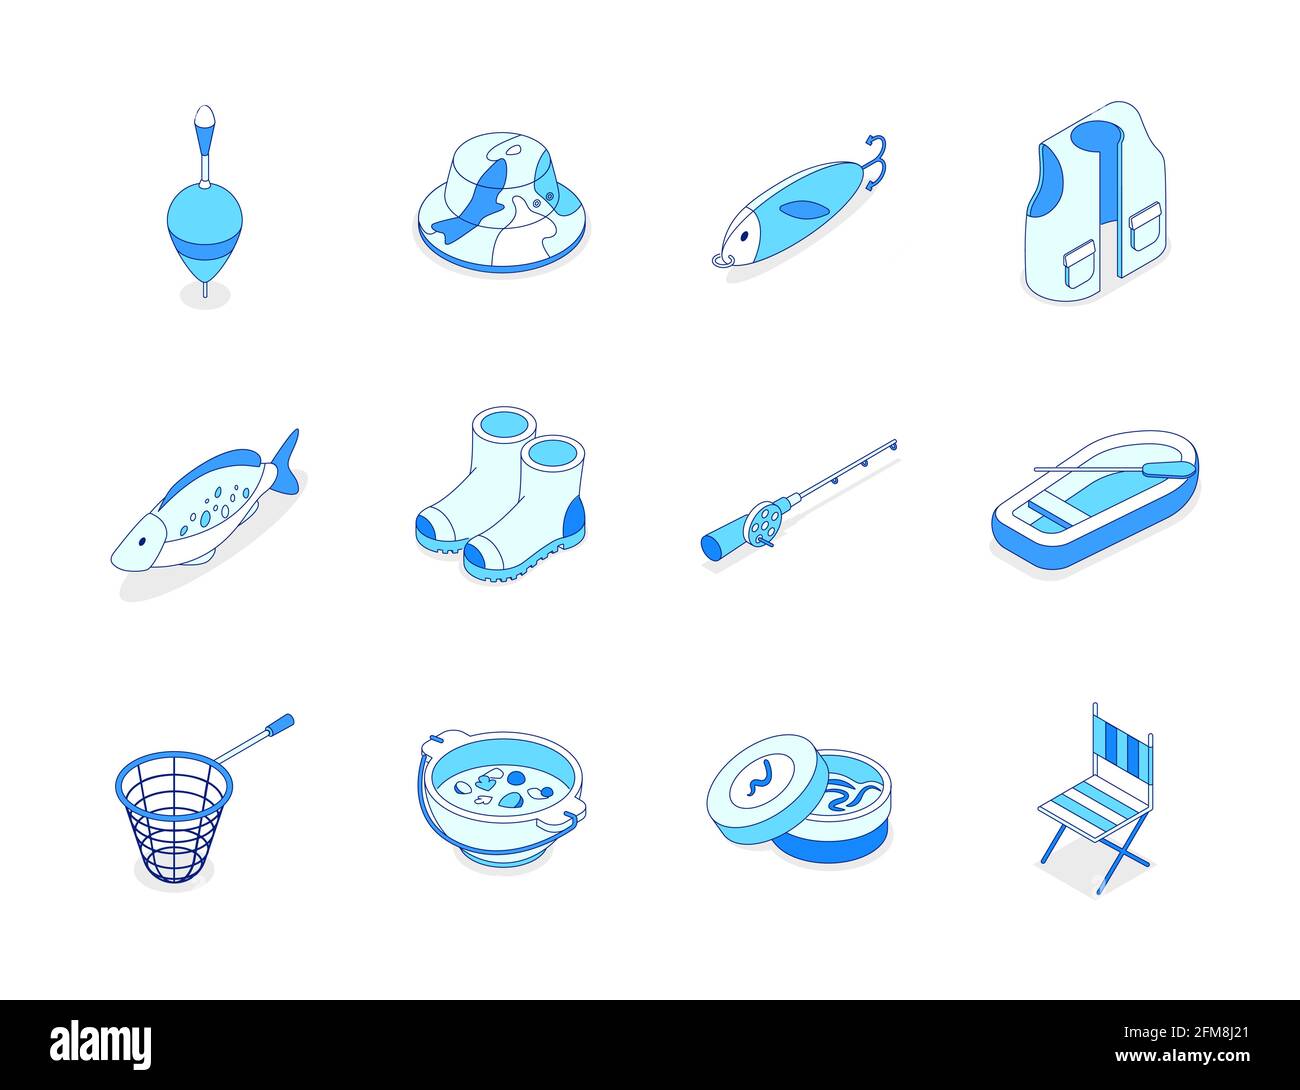 Equipo de pesca - línea moderna conjunto de iconos isométricos. Hobby, recreación y actividades de verano. Peces, botas de goma, chaleco, caña, bote y charco, s Ilustración del Vector